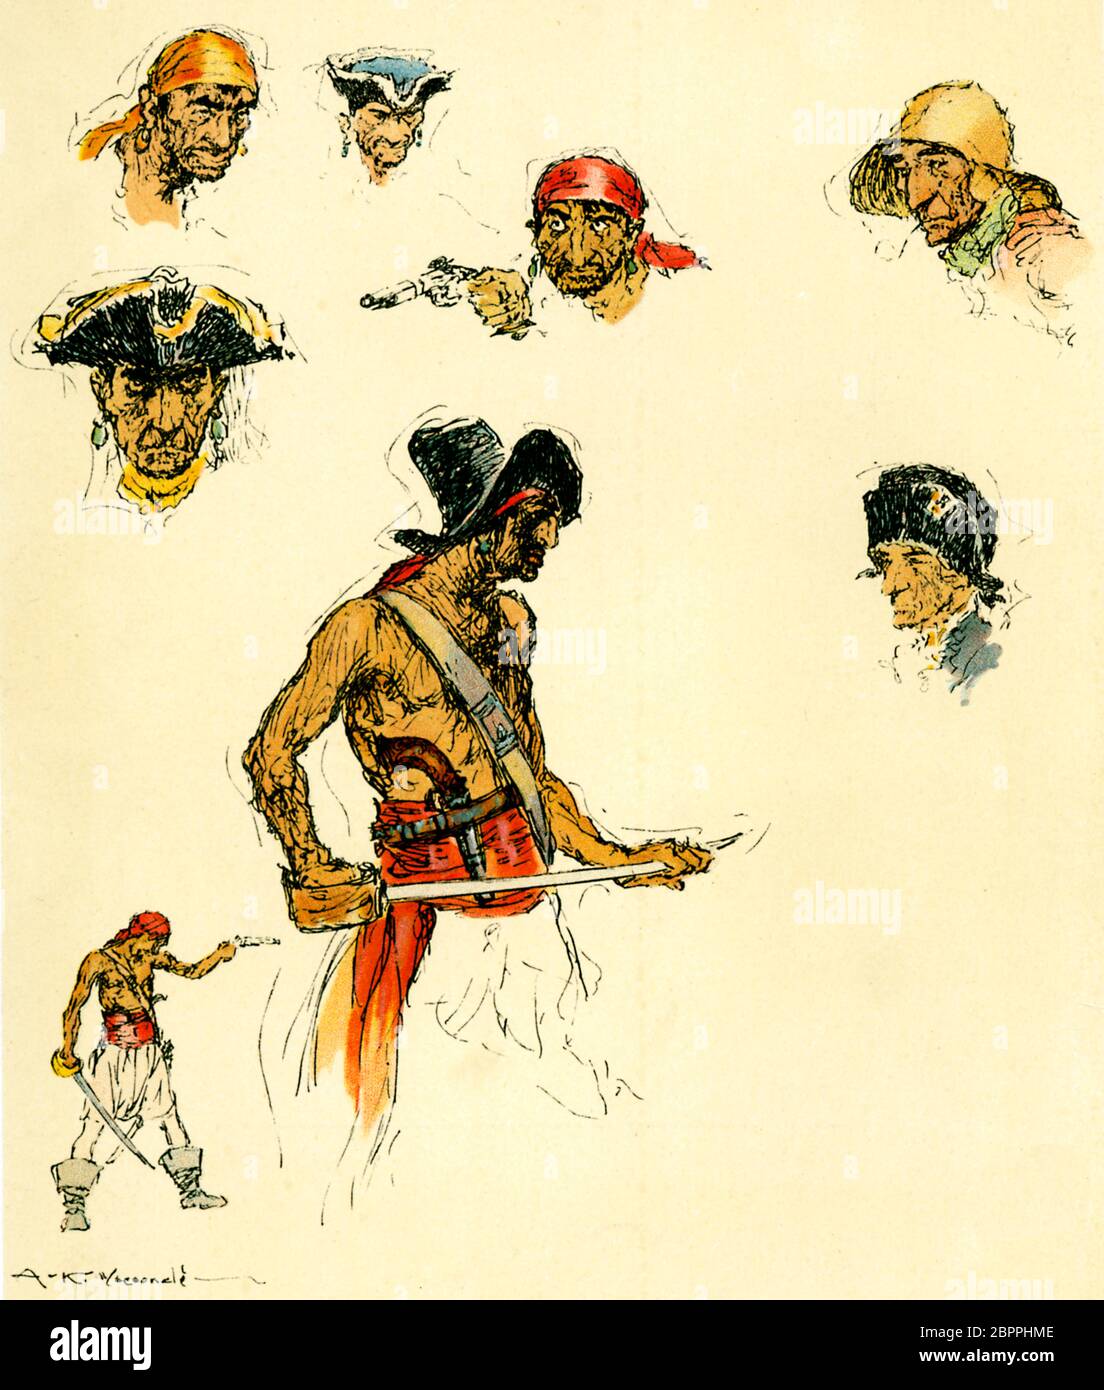 Bocetos piratas, retratos y figuras de bucaneros típicos de aspecto medio de los primeros días de la piratería en el Meno Español, cutlasses y flintlocks listos para la acción Foto de stock